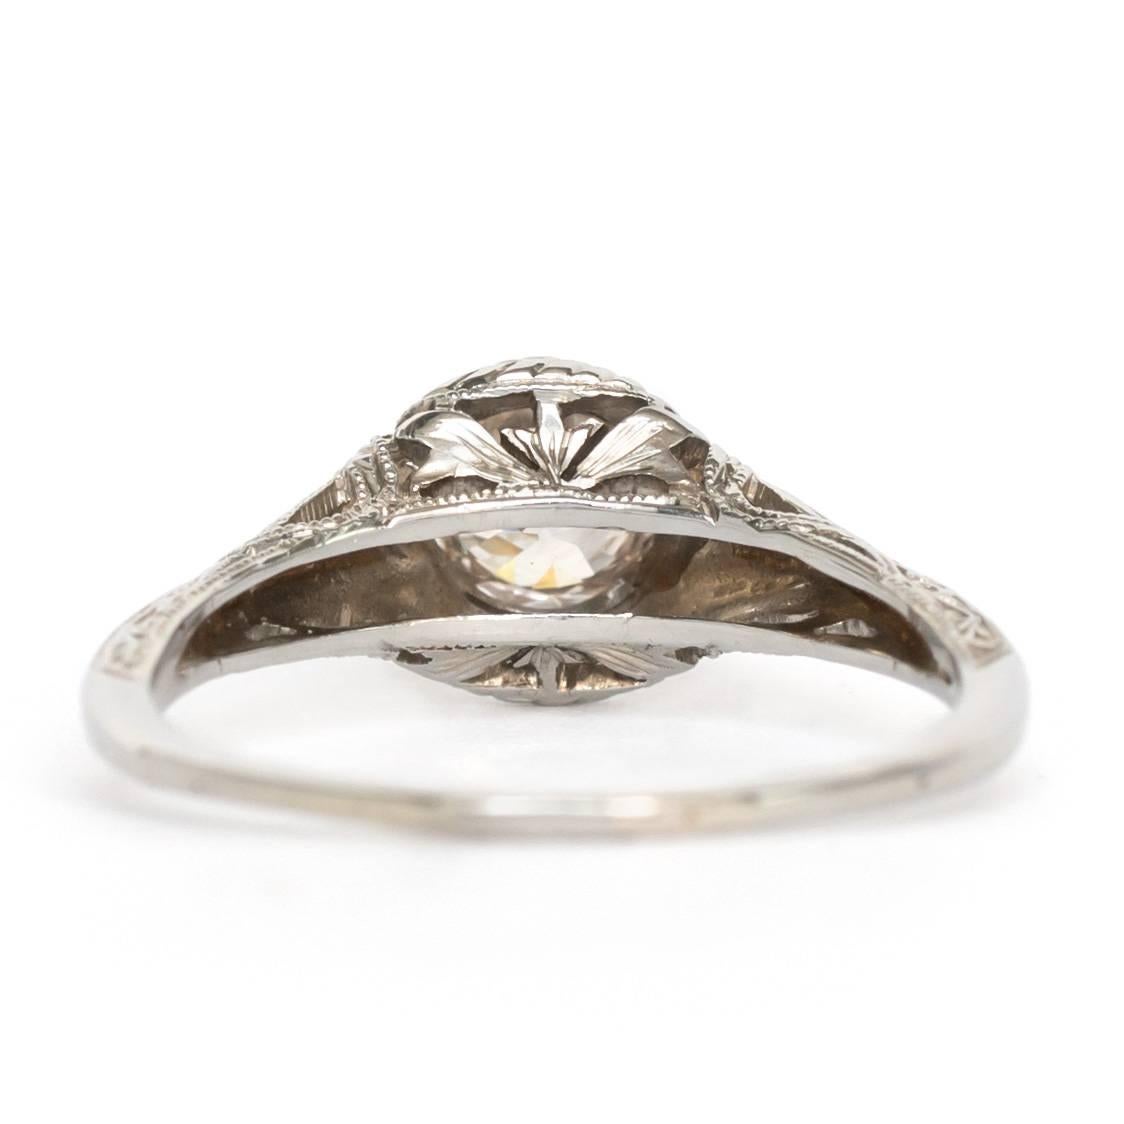 Women's 1910s Edwardian GIA Certified .60 Carat Diamond White Gold Engagement Ring